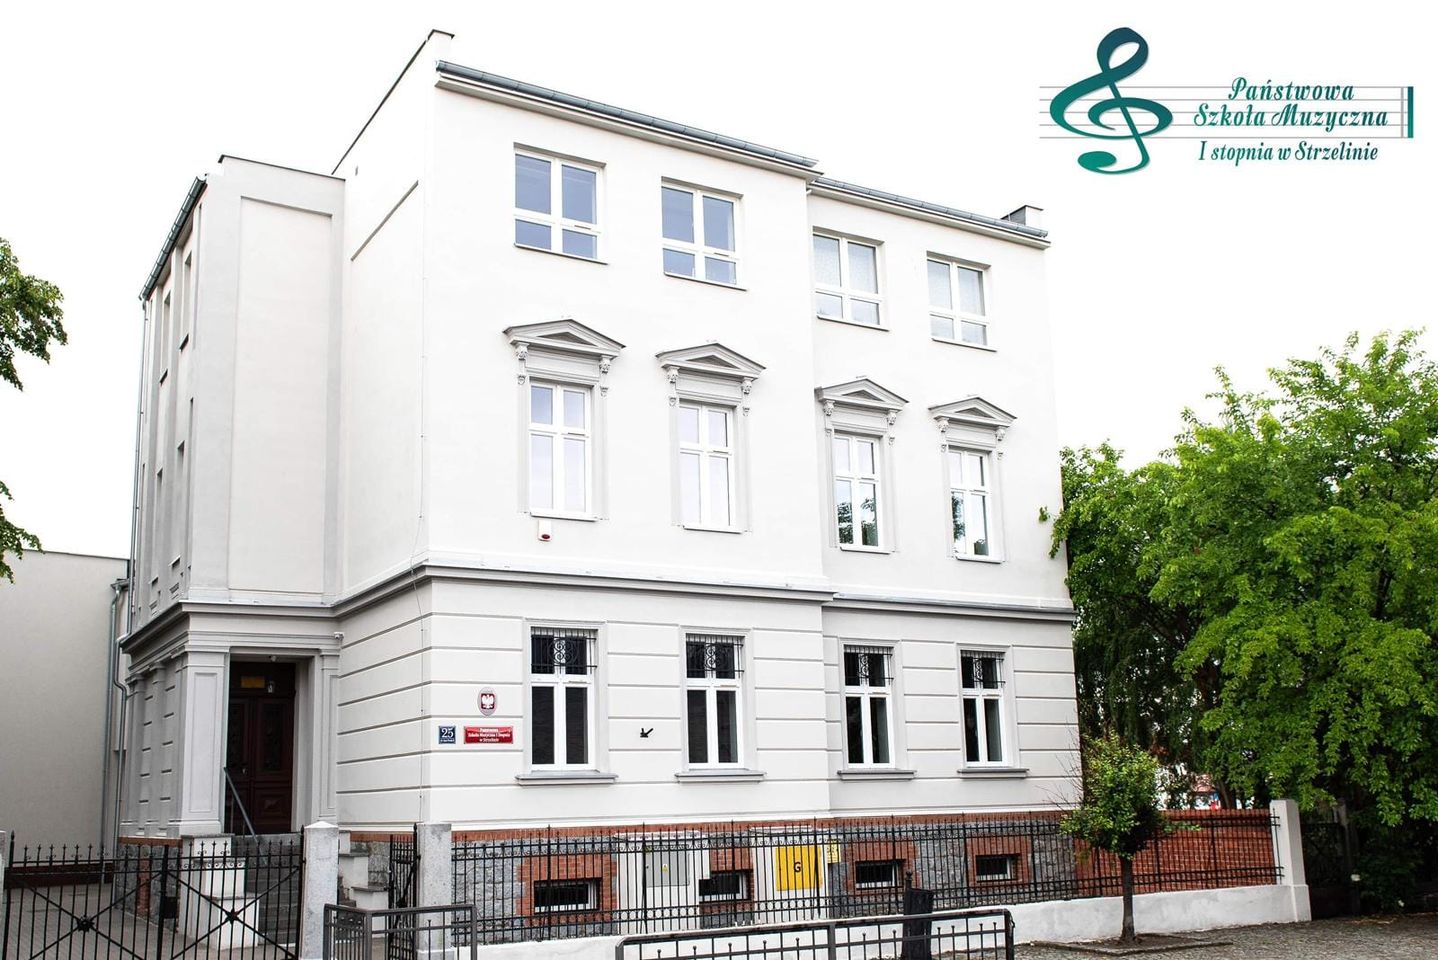 Na zdjęciu znajduje się budynek PSM Strzelin po termomodernizacji widziany od strony ulicy Jana Pawła II. W górnej części znajduje się logo PSM Strzelin.